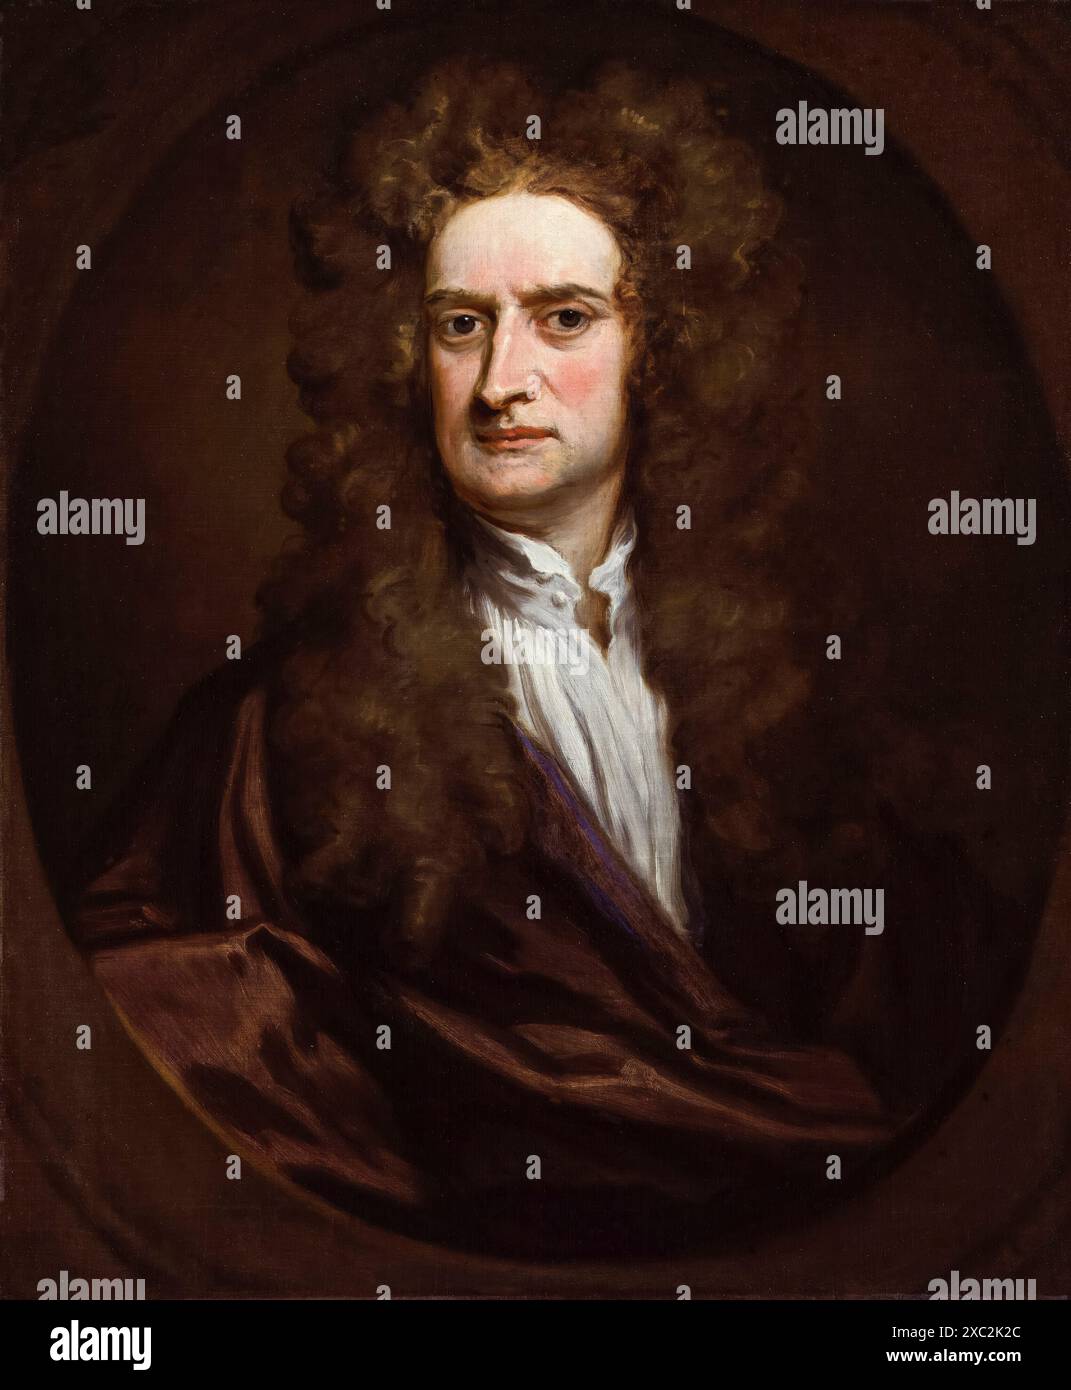 Sir Isaac Newton (1642-1727), scientifique anglais, portrait peint à l'huile sur toile par Sir Godfrey Kneller, 1702 Banque D'Images